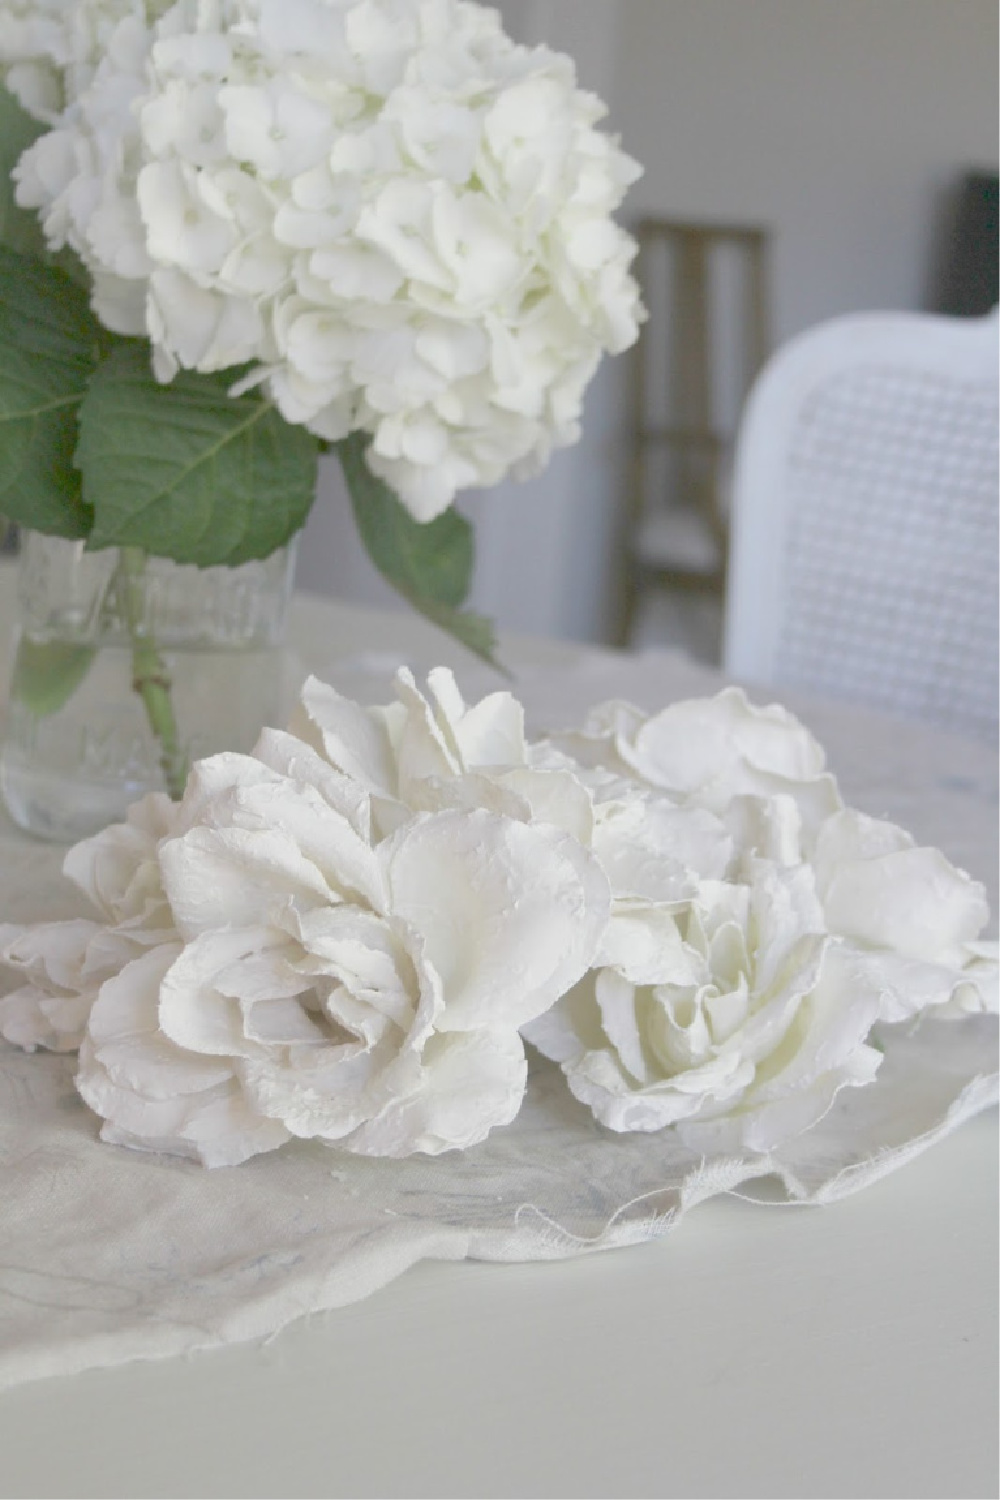 Hello Lovely's plaster white roses.